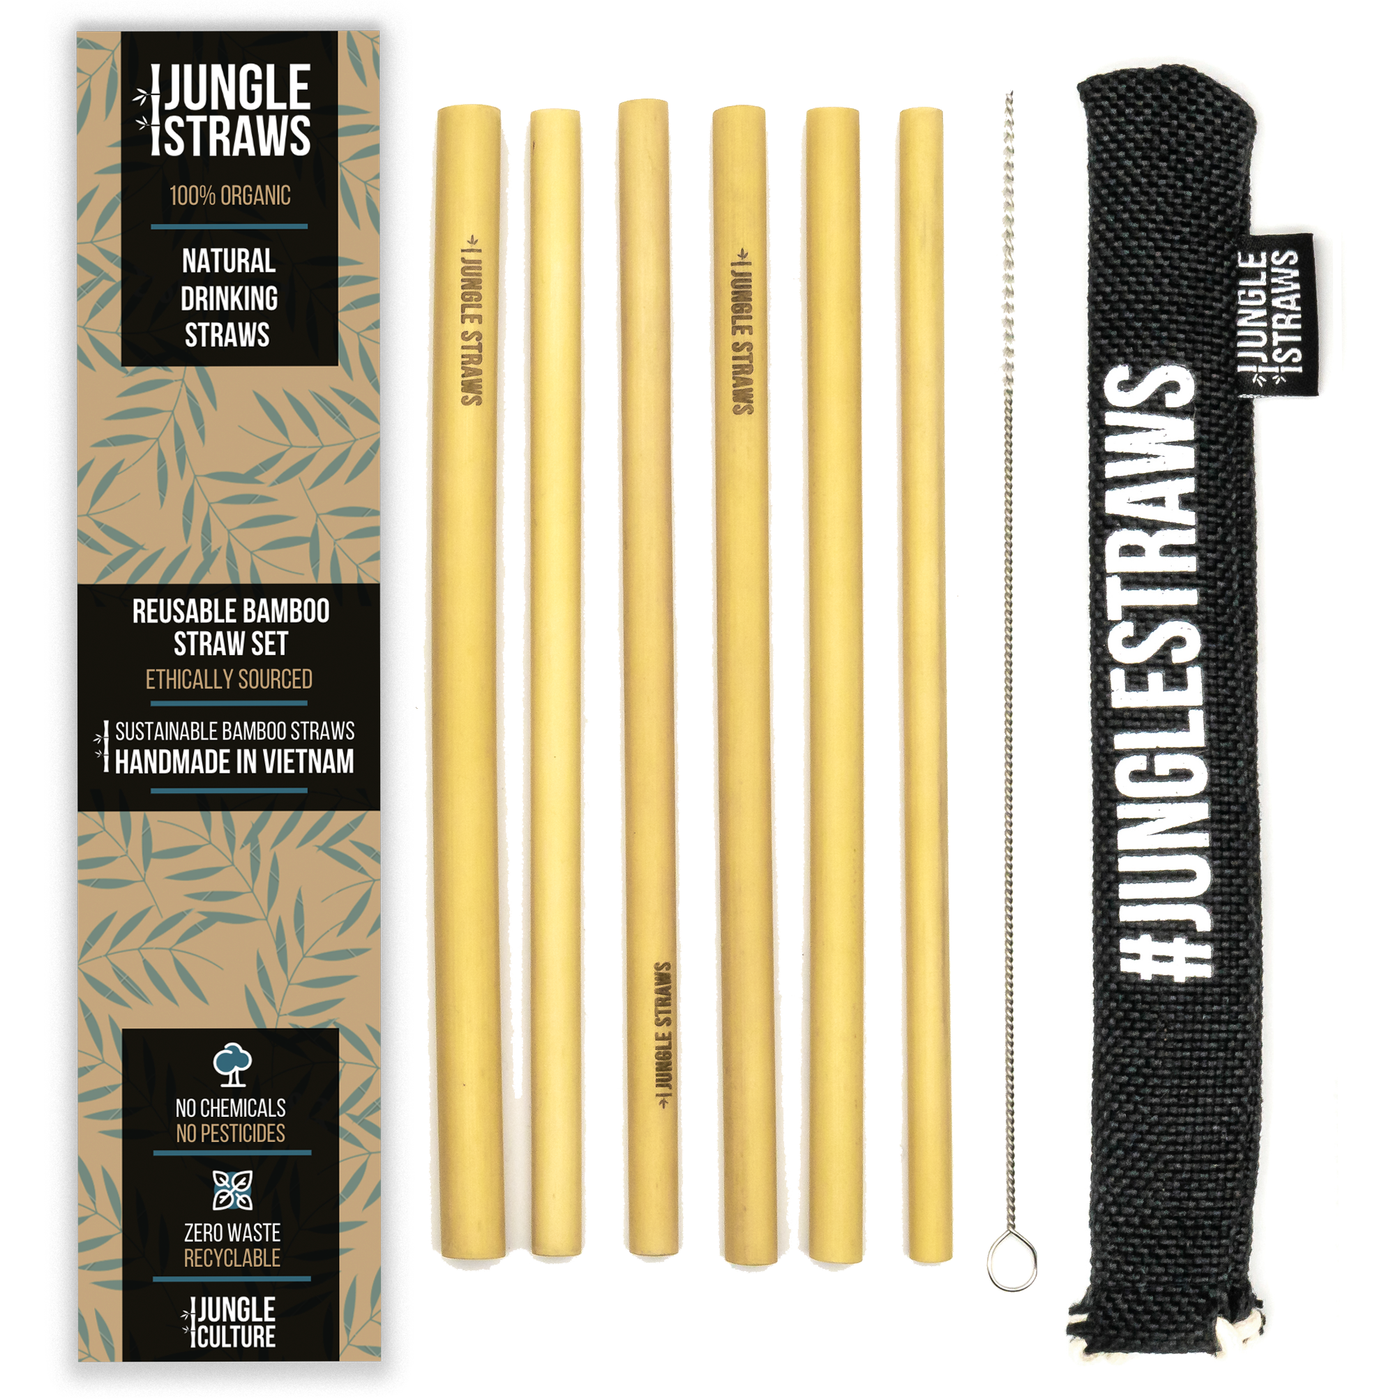 Bamboo Straws 6-Pack